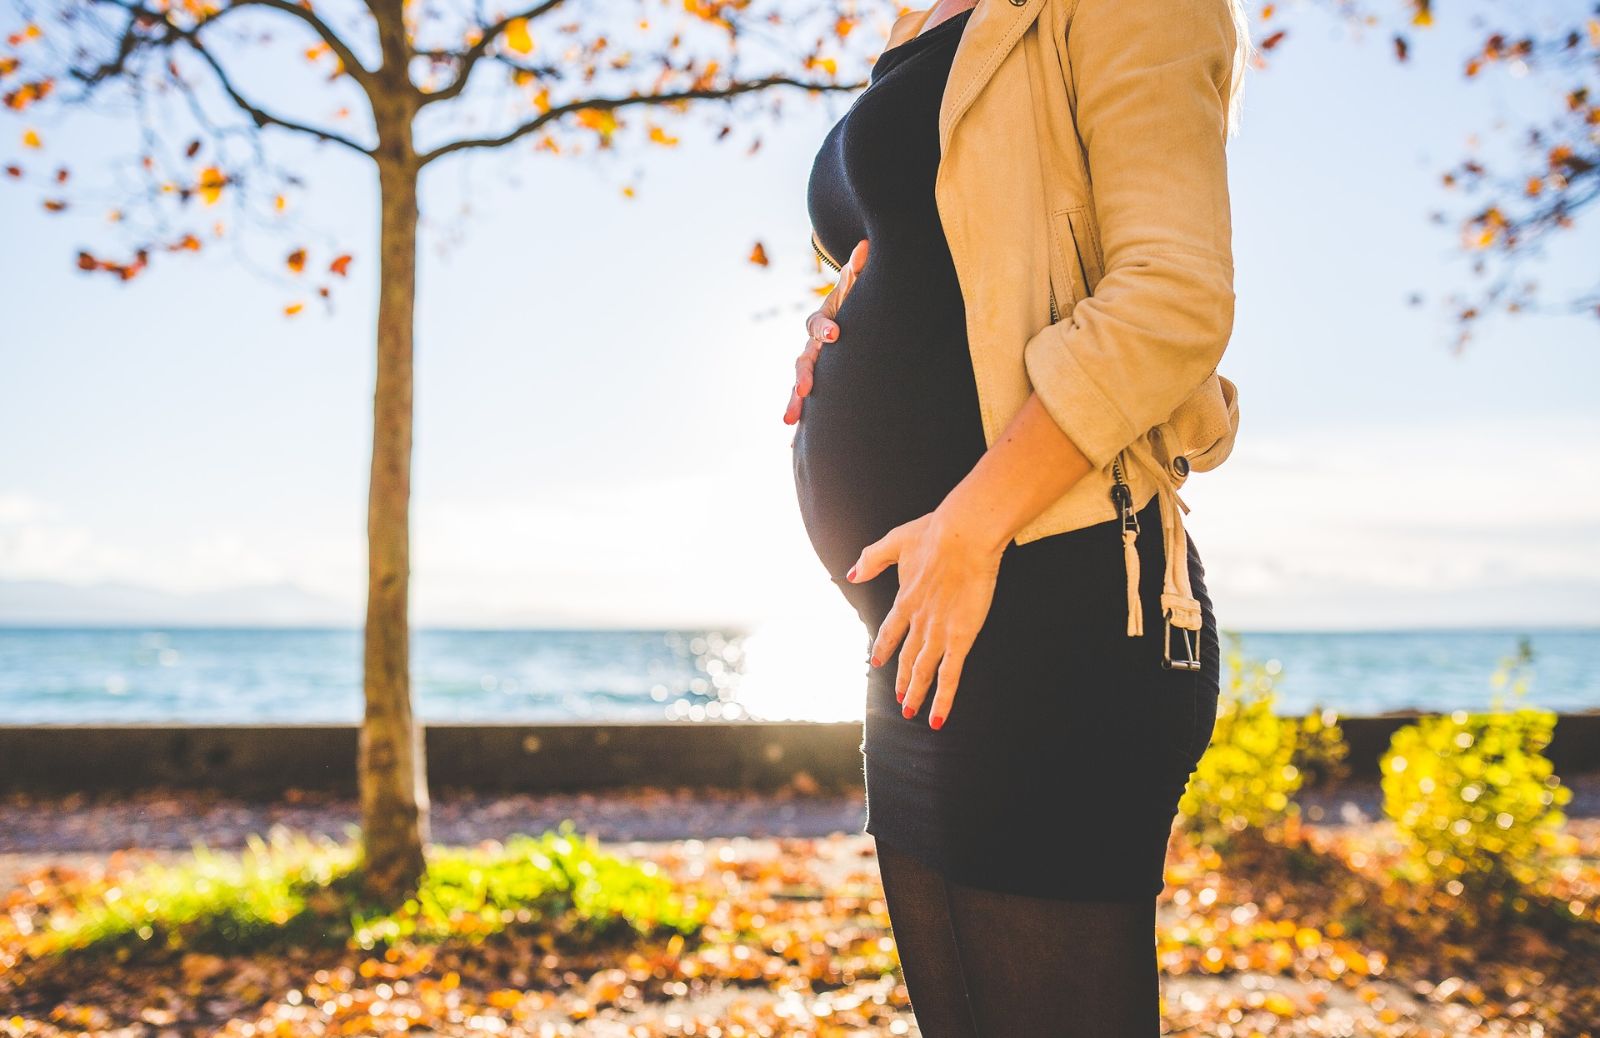 Giorni fertili: ecco i segnali dell'ovulazione